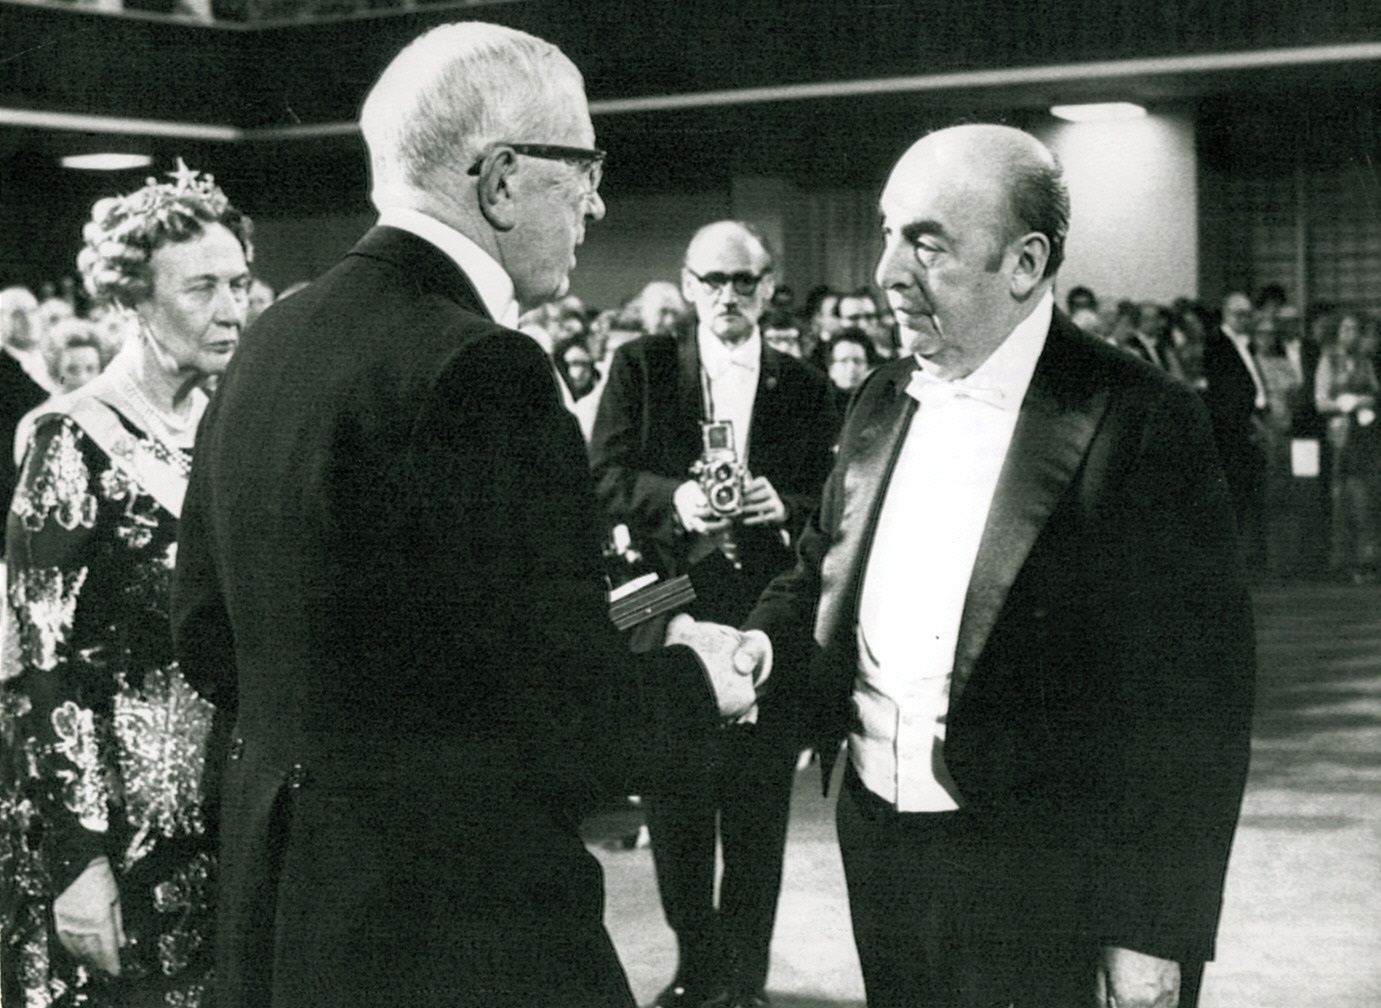 Fotografía de archivo fechada el 10 de diciembre de 1971 que muestra al poeta chileno Pablo Neruda mientras recibe de manos del rey Gustavo Adolfo (i) de Suecia el Premio Nobel de Literatura, en Estocolmo (Suecia).  EFE/UPI
